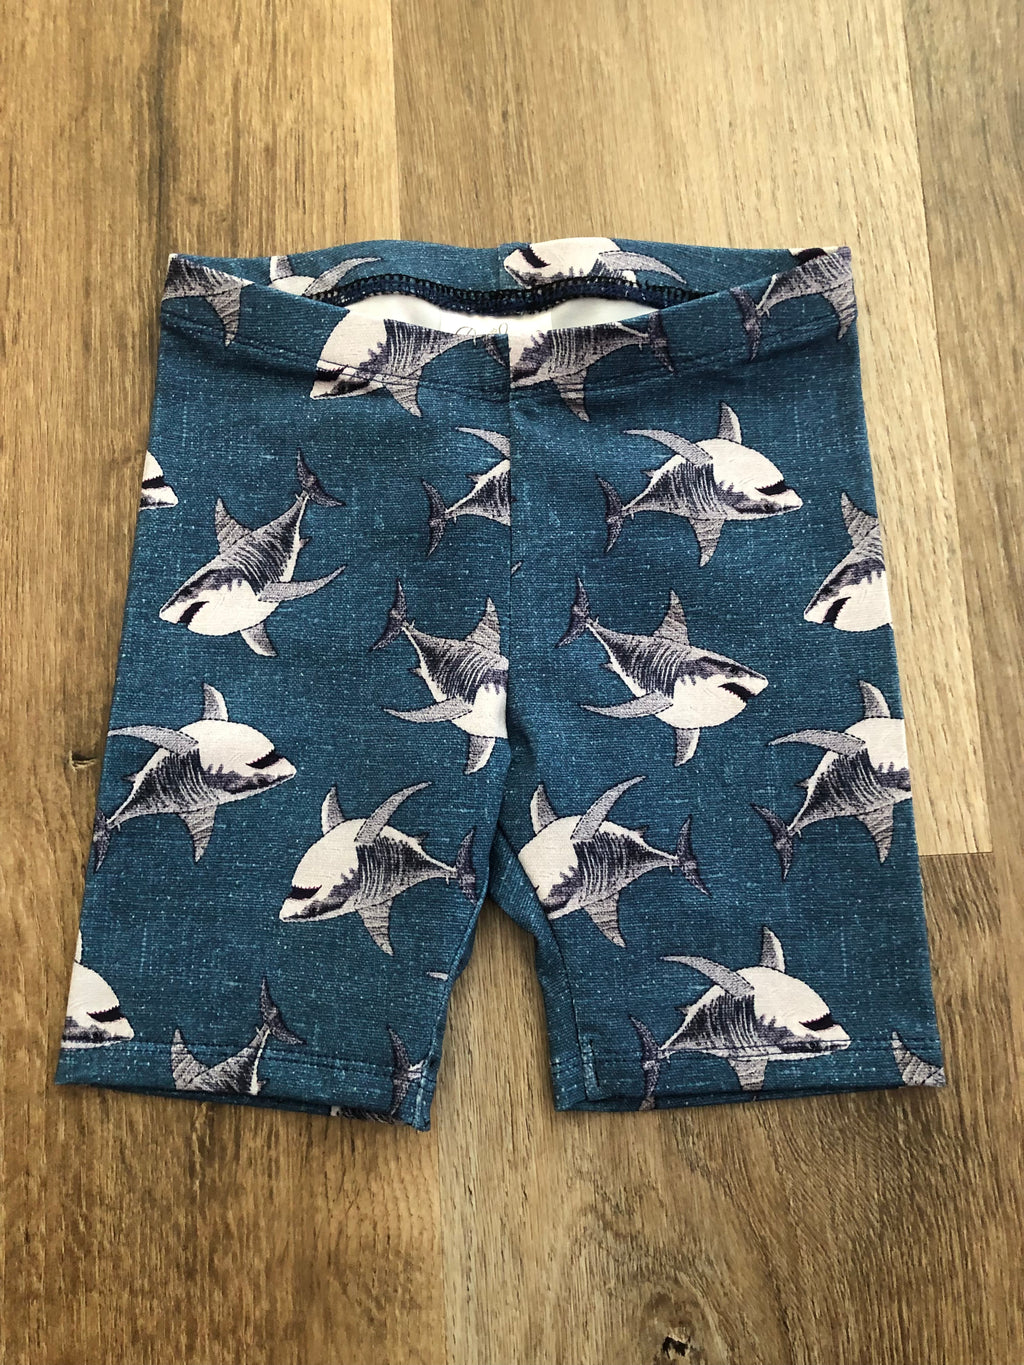 Sharks Bike Shorts size 3